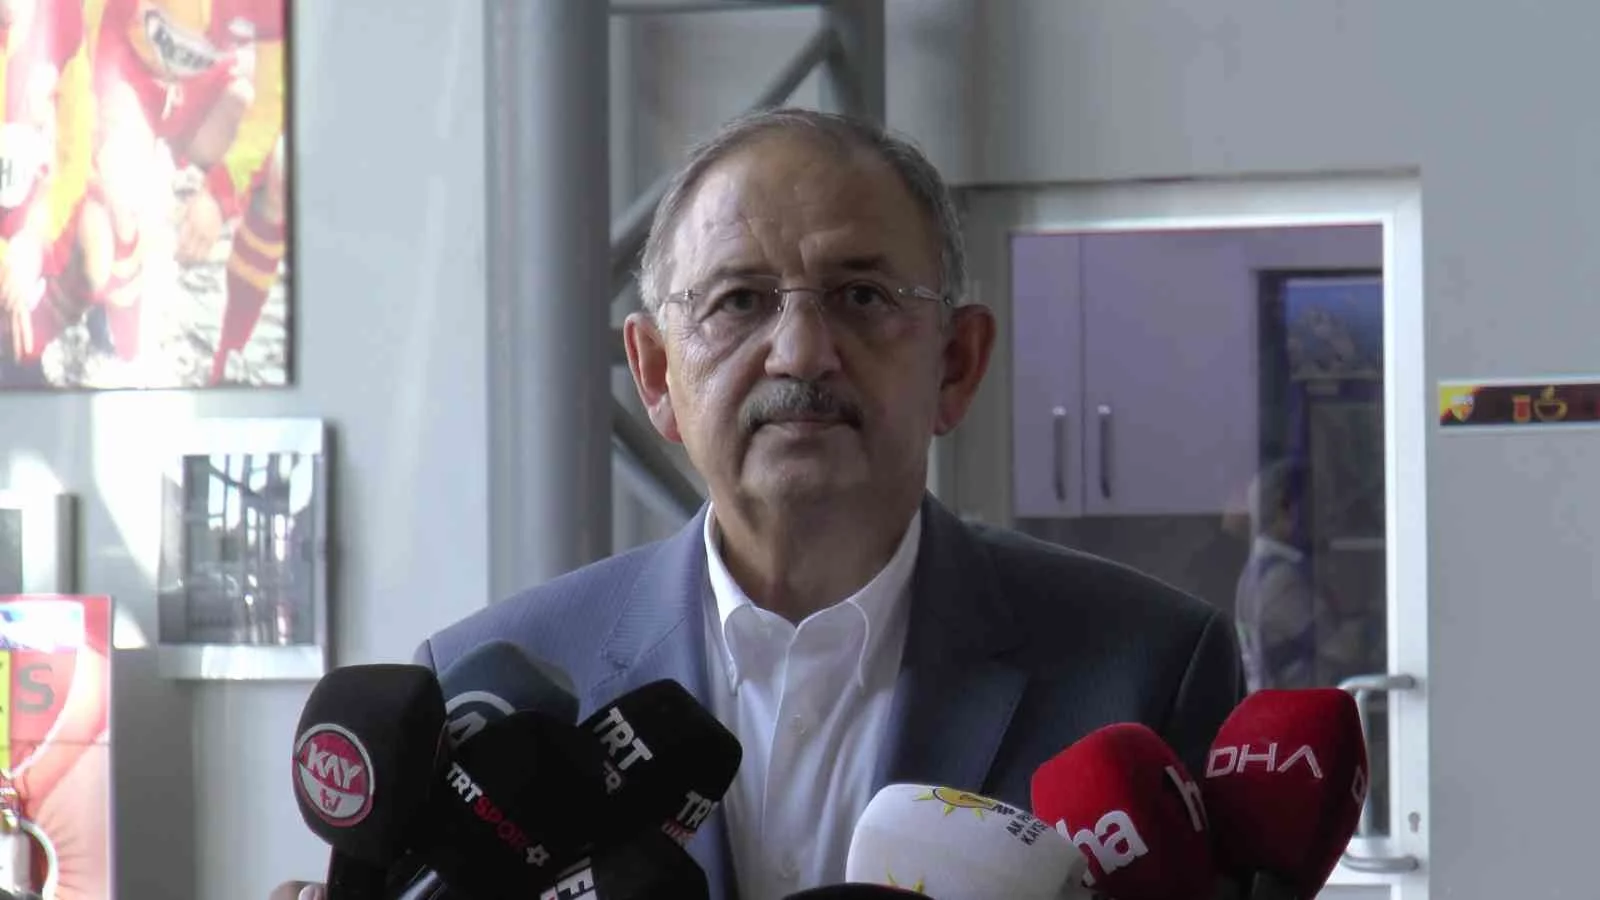 Mehmet Özhaseki: “Eğer Sayıştay kararında köprüye 15 milyon TL verdiğim çıkarsa, milletvekilliğinden istifa ederim”